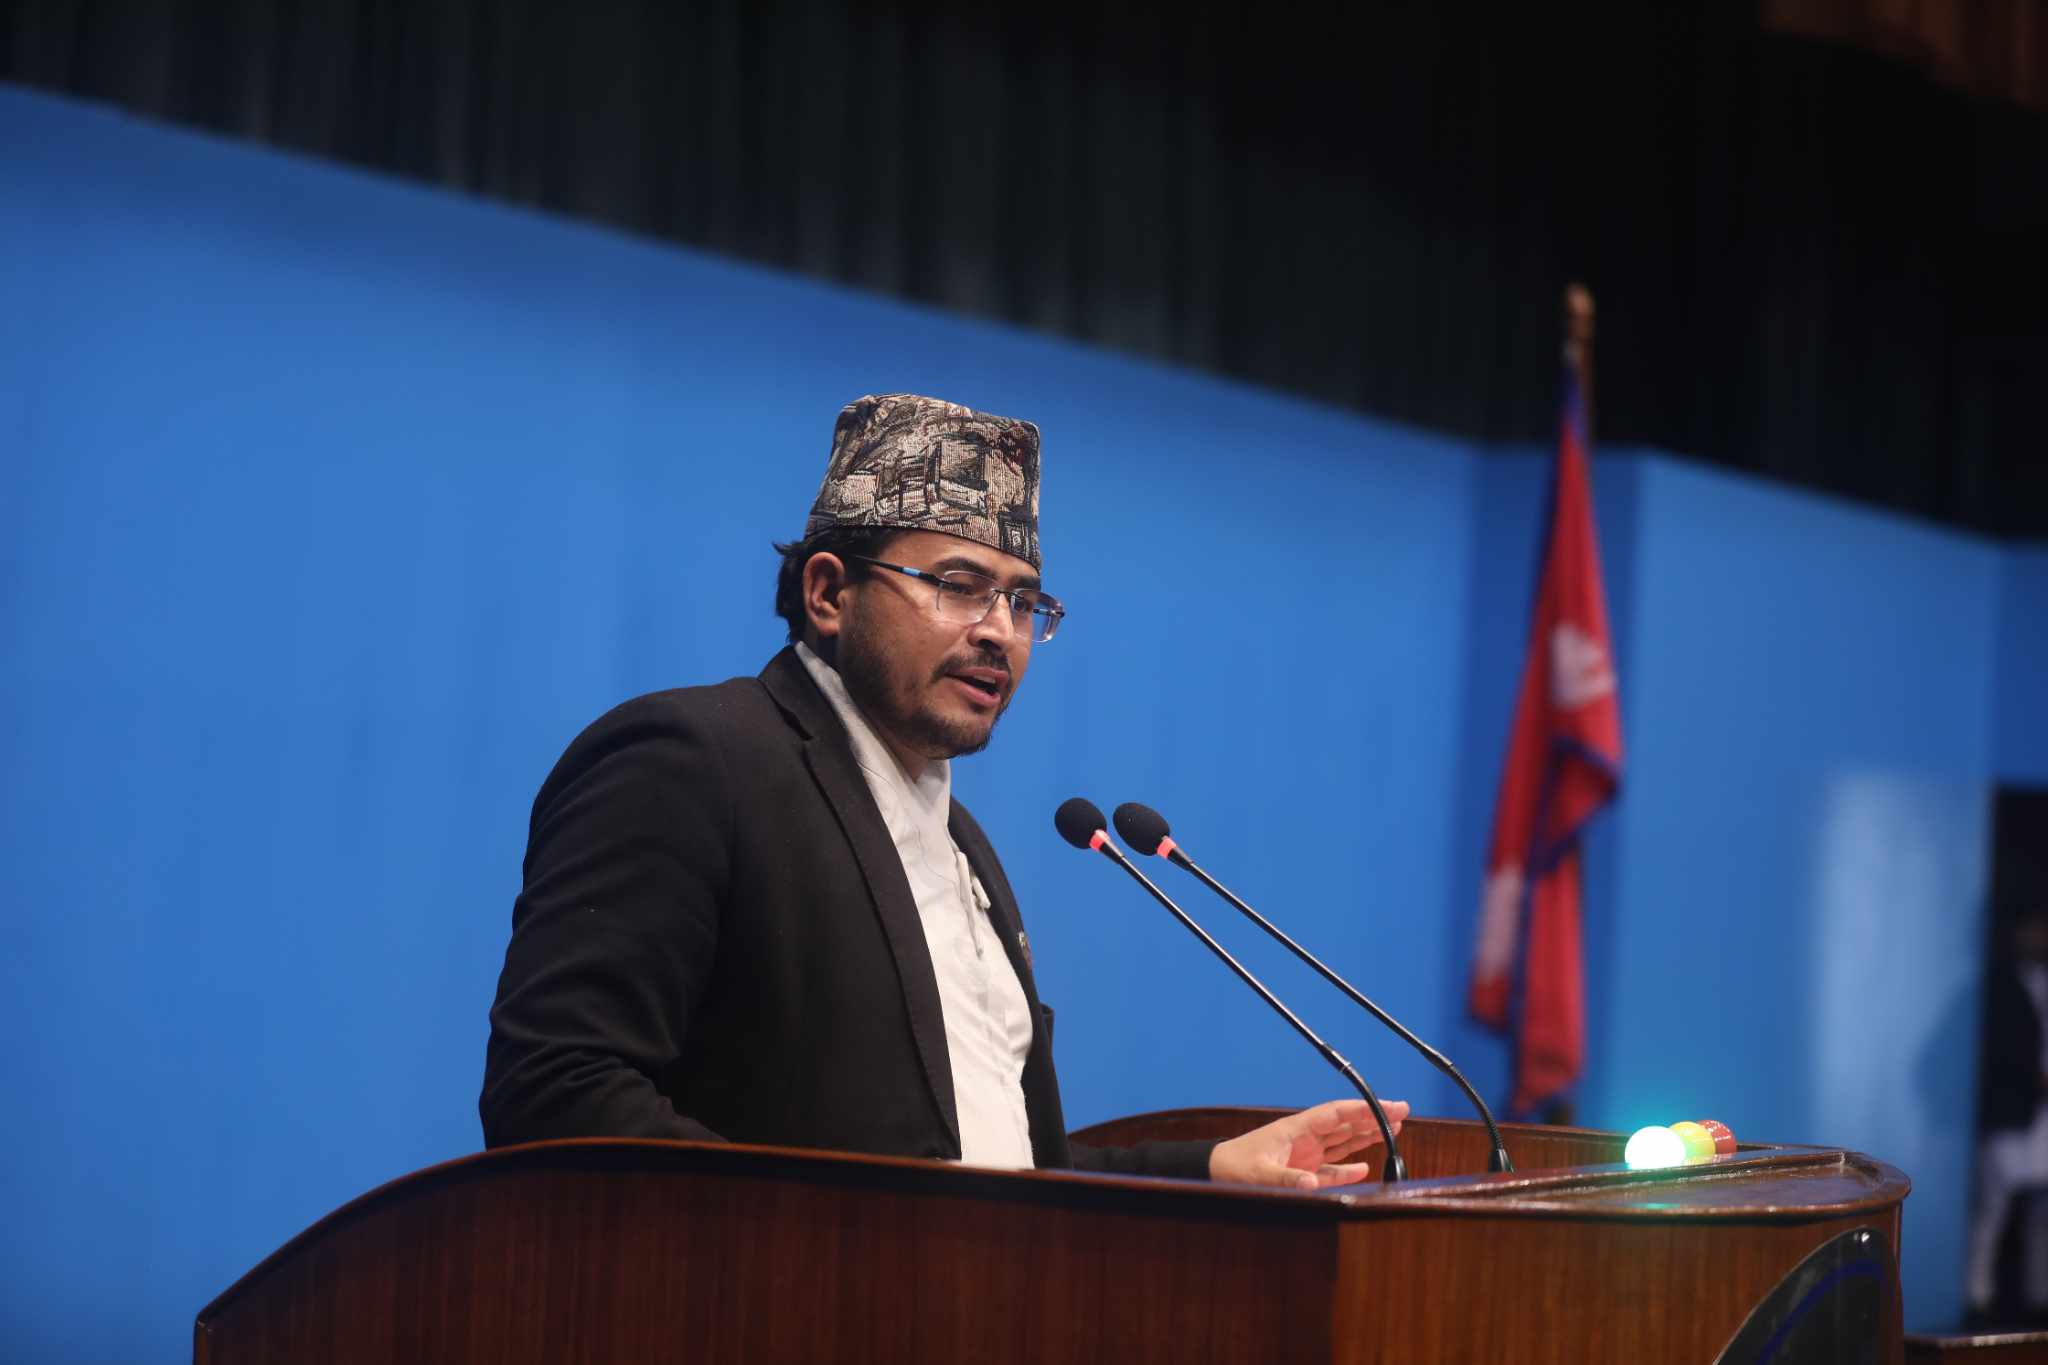 काठमाडौं महानगरमा बालेन शाहलाई असफल बनाइँदै छ: ज्ञानेन्द्र शाही